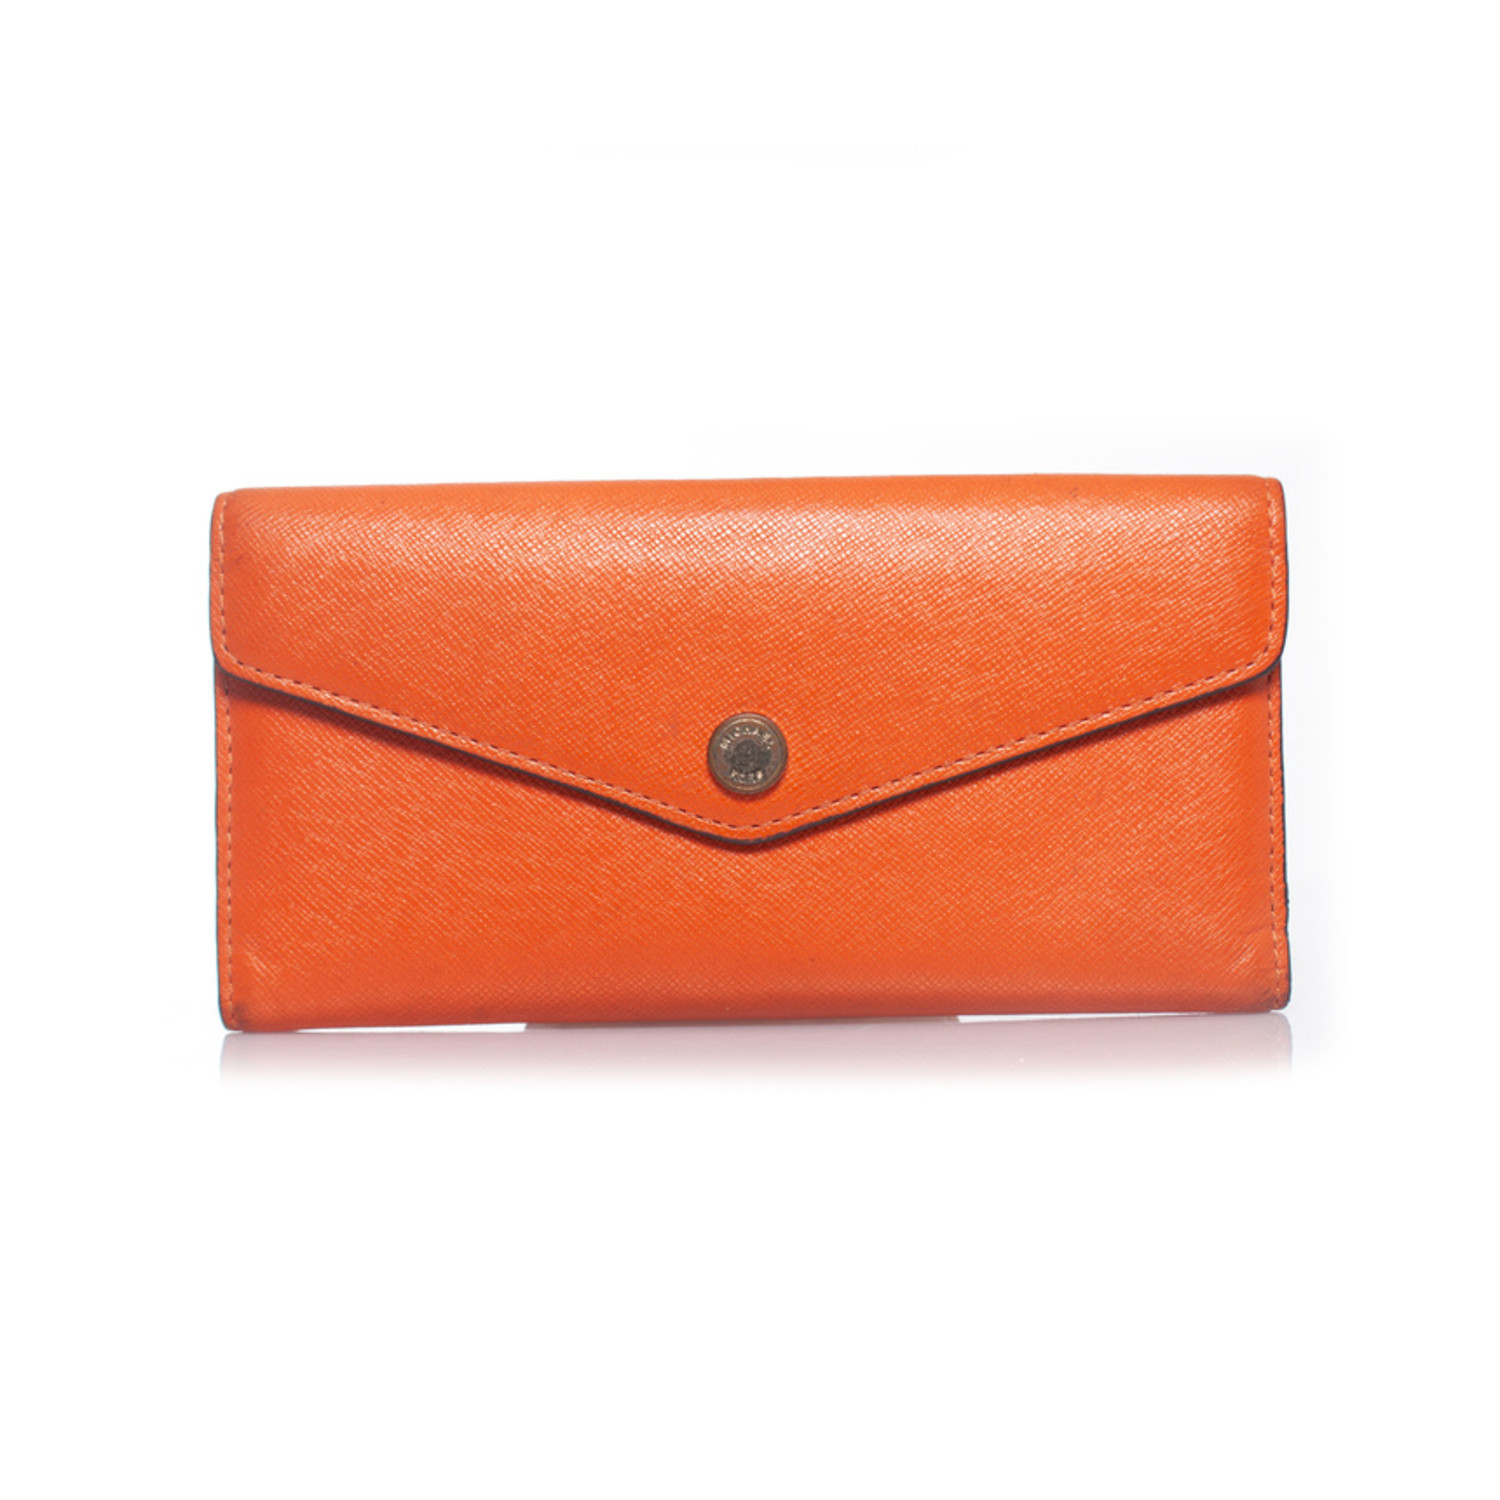 Michael Kors, orange leather wallet - Unique Designer Pieces